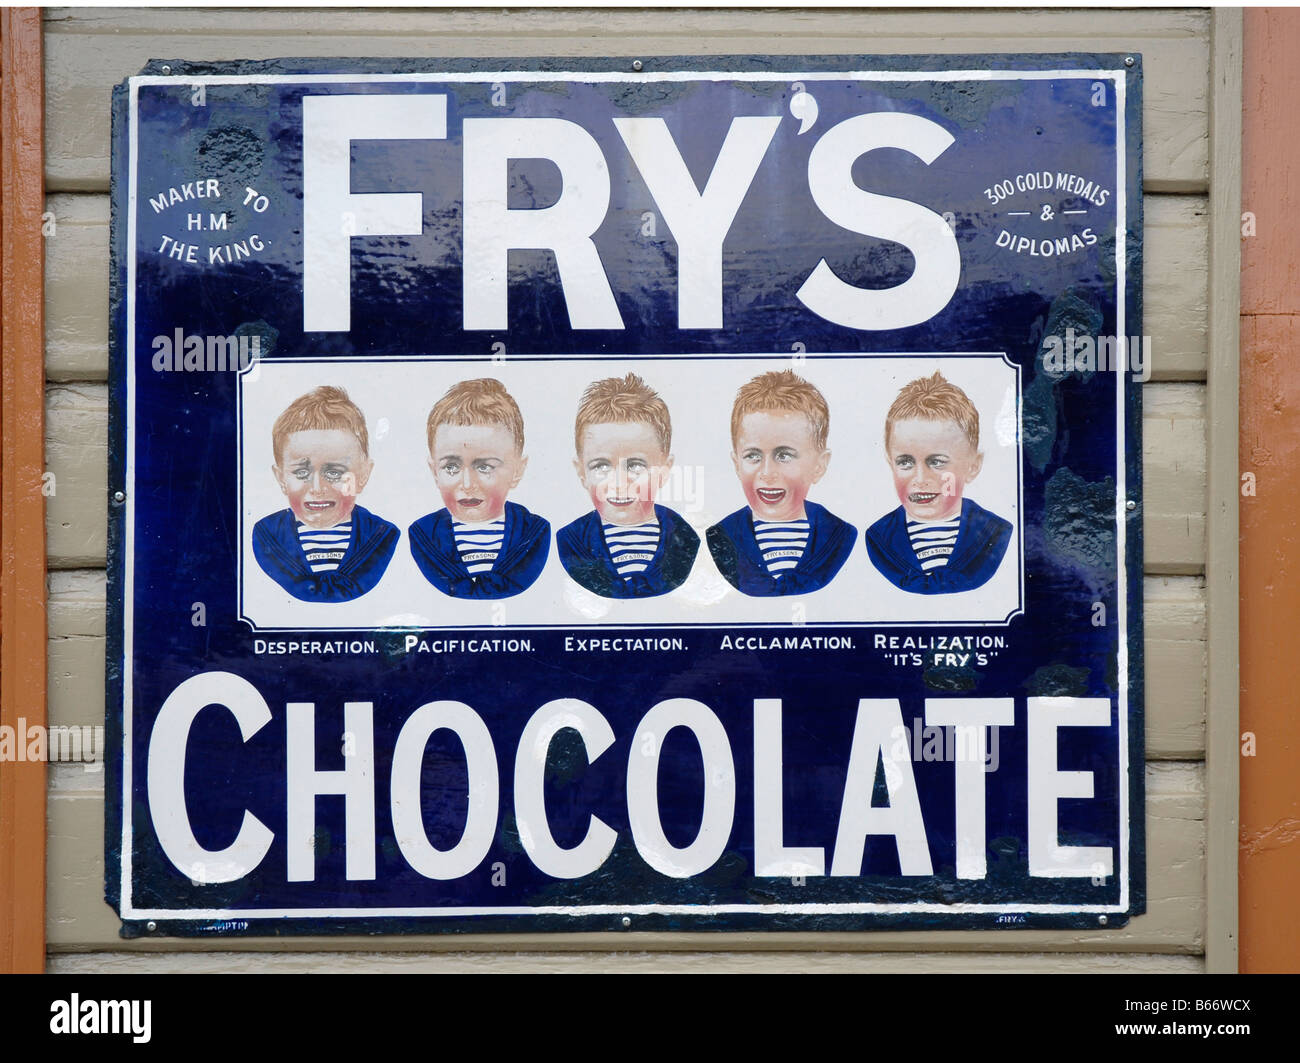 Affiche pour Fry's chocolat sur métal dans le style des années 1930. Visage du garçon avec la gamme d'expressions. Banque D'Images